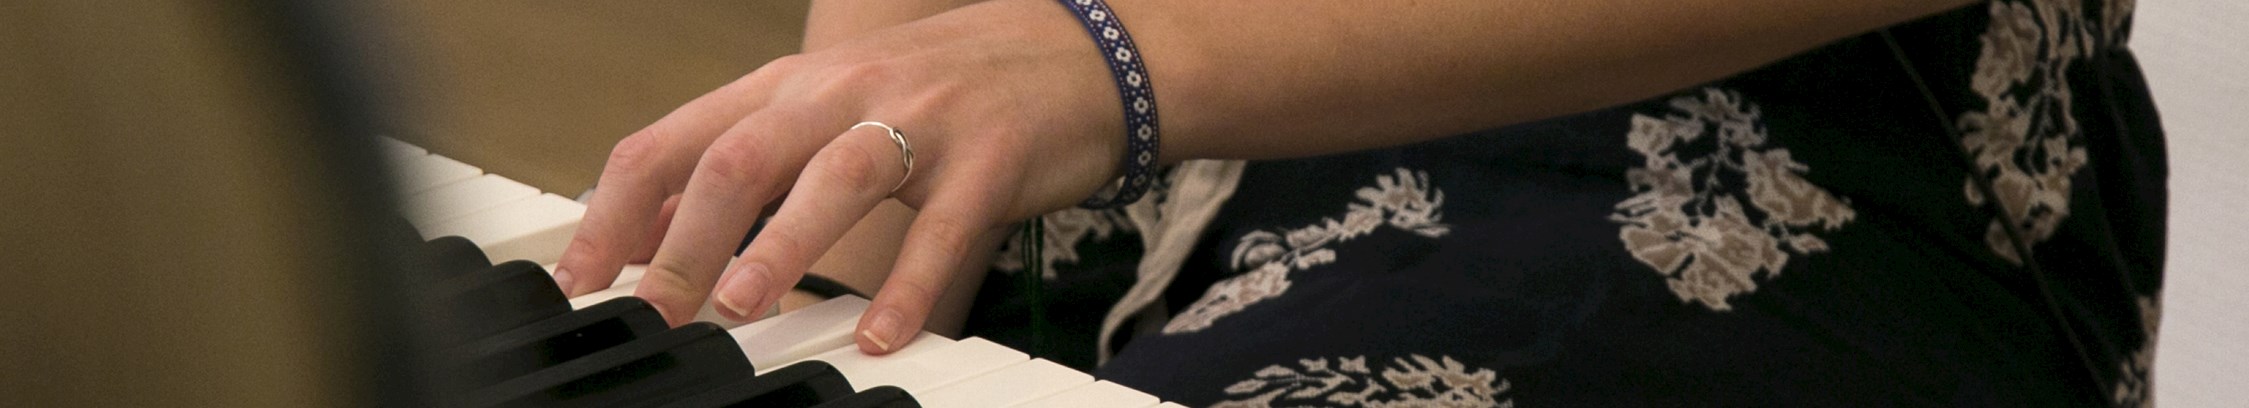 Lær at spille klaver hos FOF København